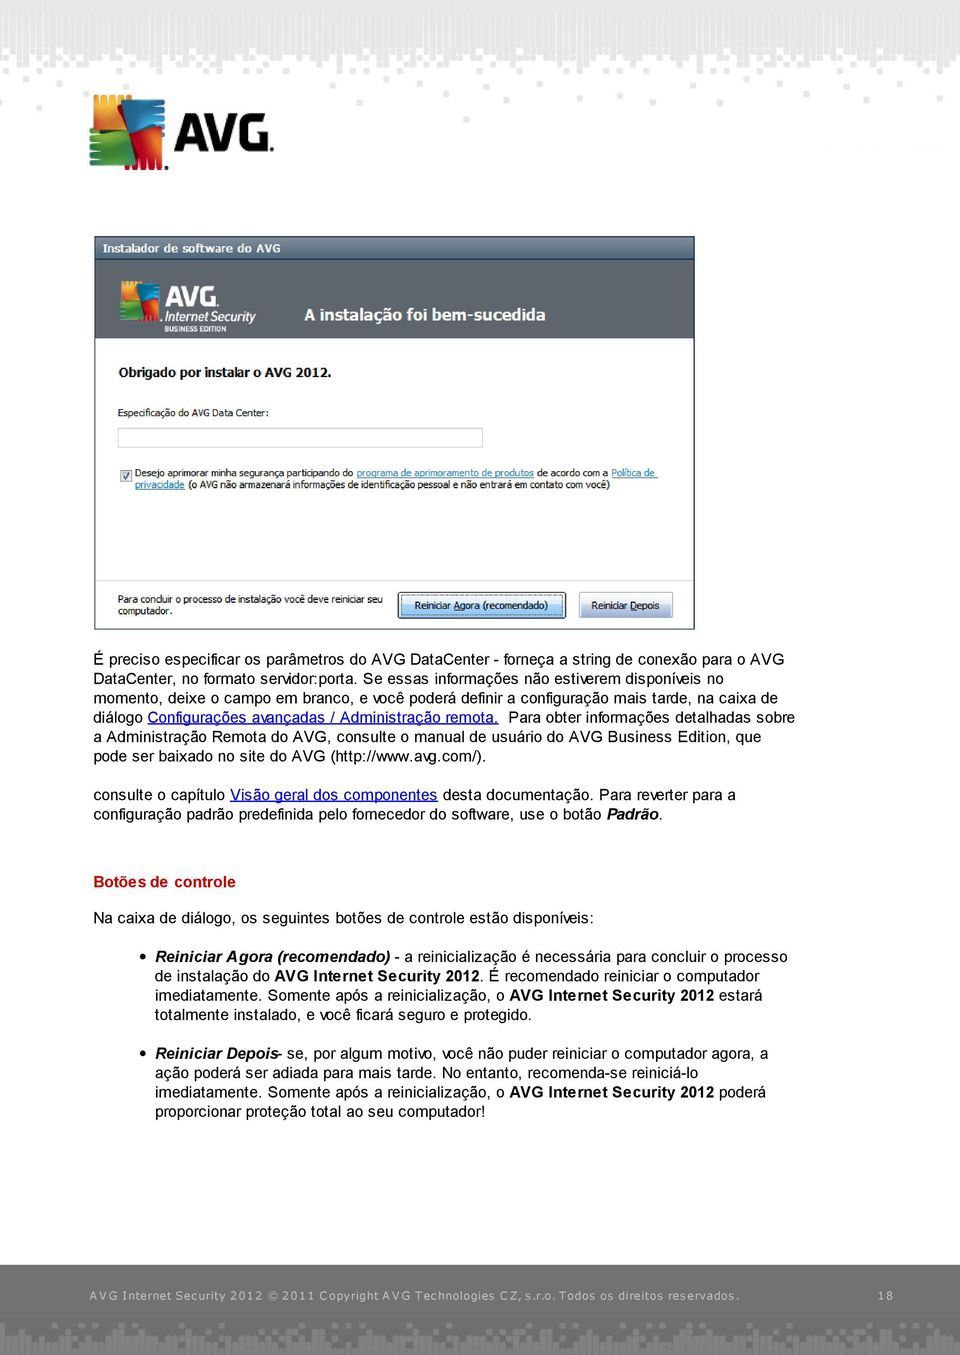 Para obter informações detalhadas sobre a Administração Remota do AVG, consulte o manual de usuário do AVG Business Edition, que pode ser baixado no site do AVG (http://www.avg.com/).